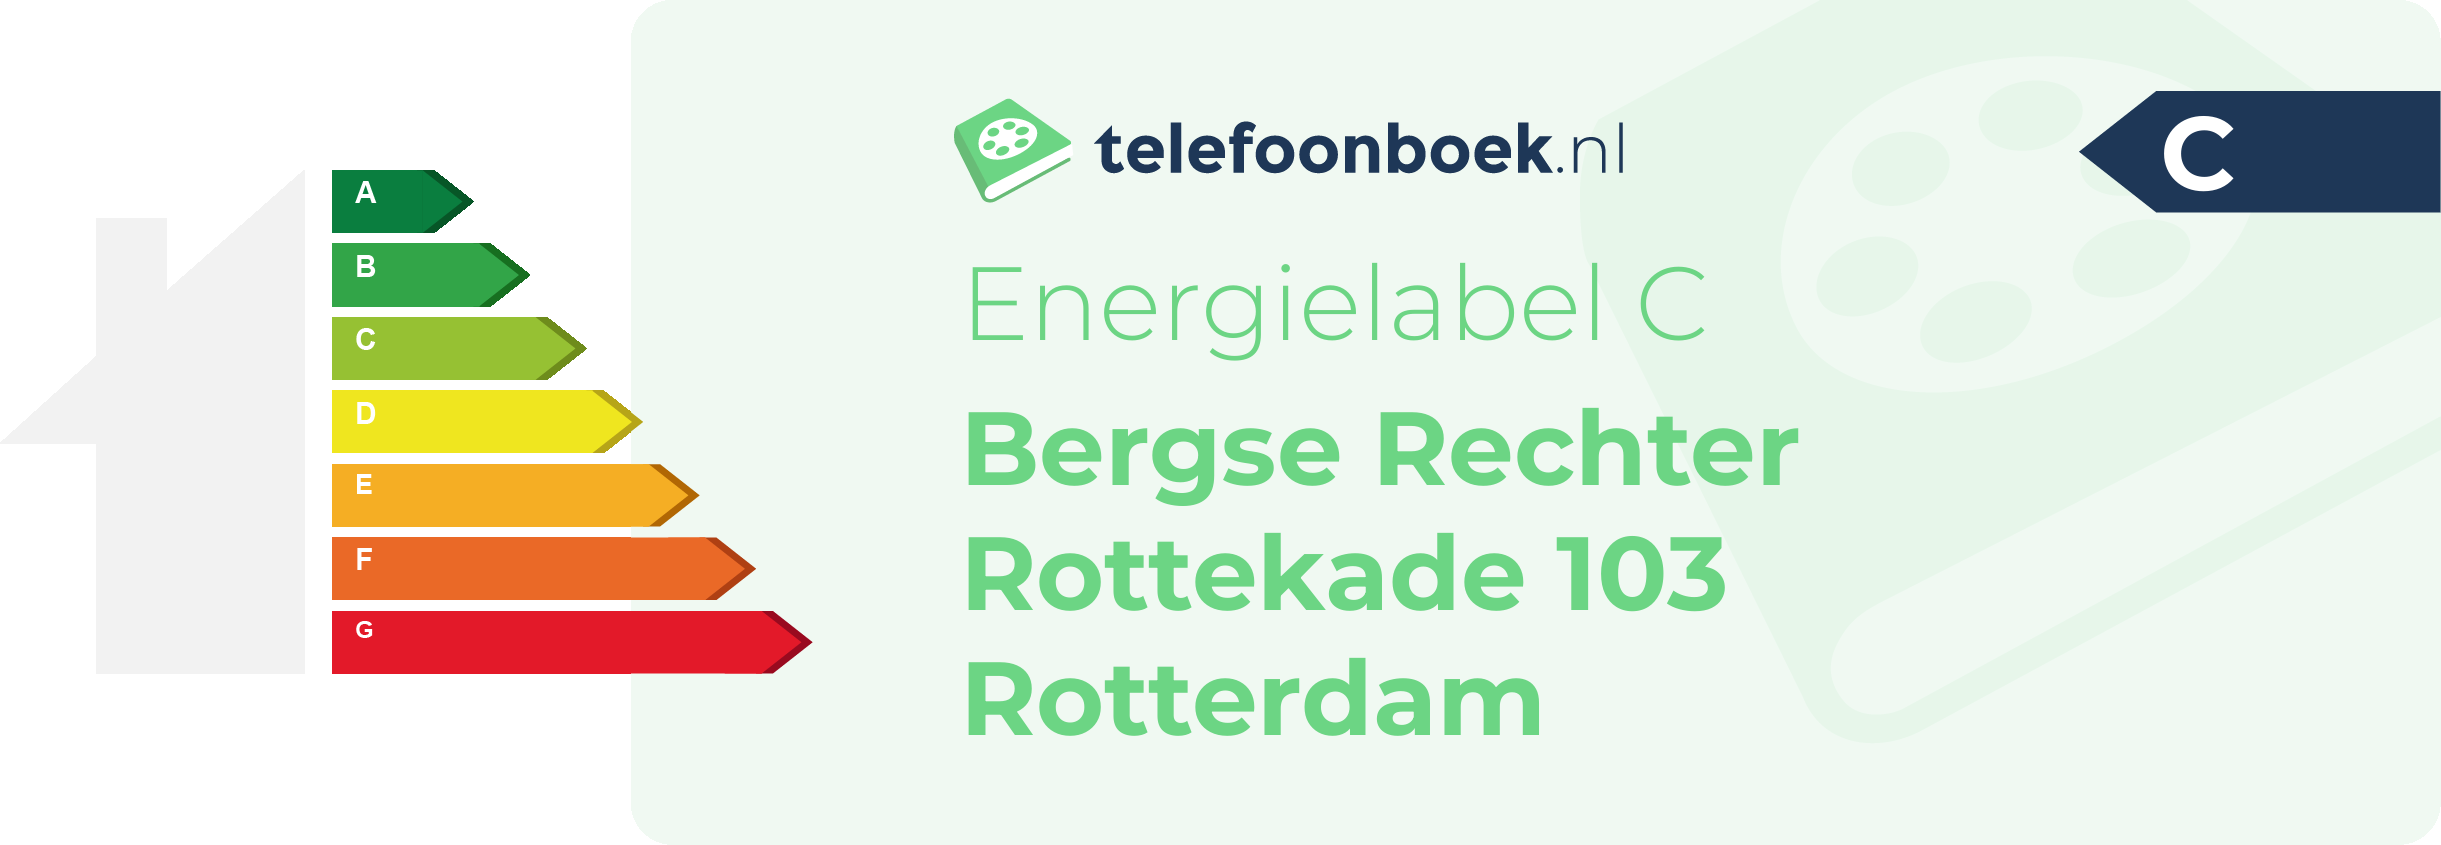 Energielabel Bergse Rechter Rottekade 103 Rotterdam